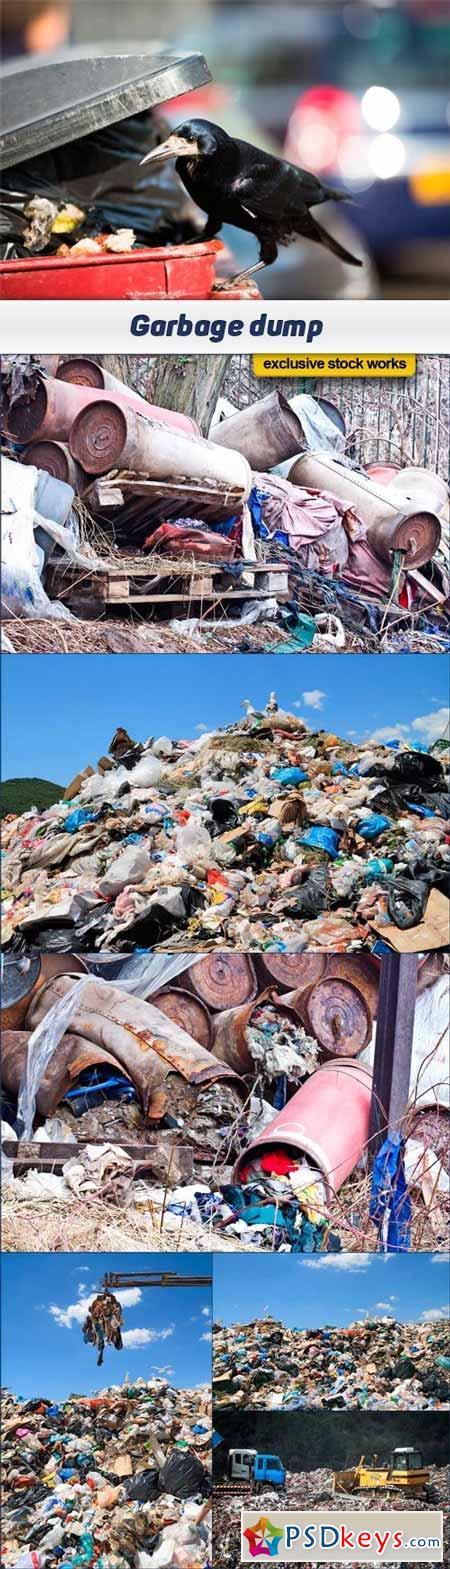 Garbage dump 7x JPEG